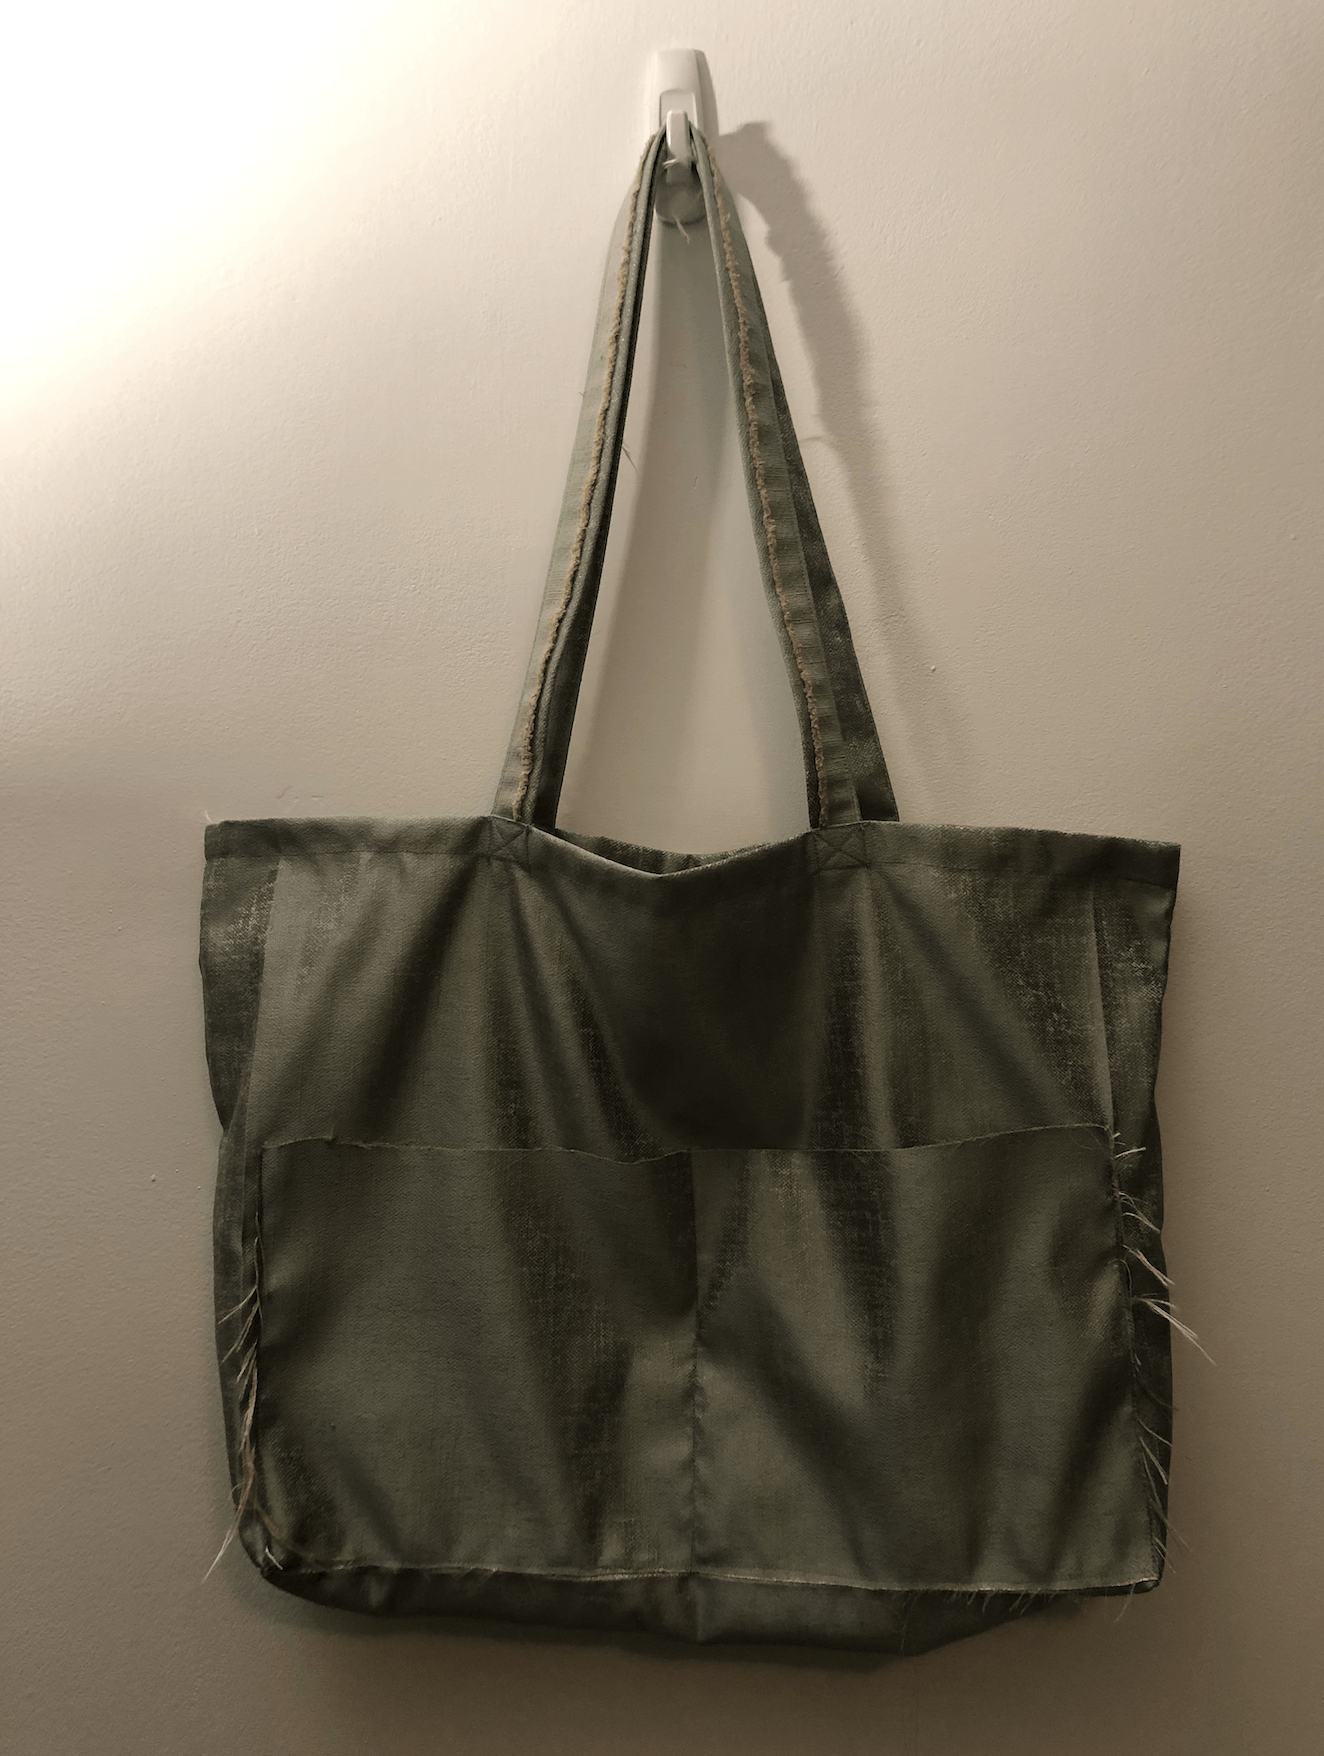 A NEW BAG